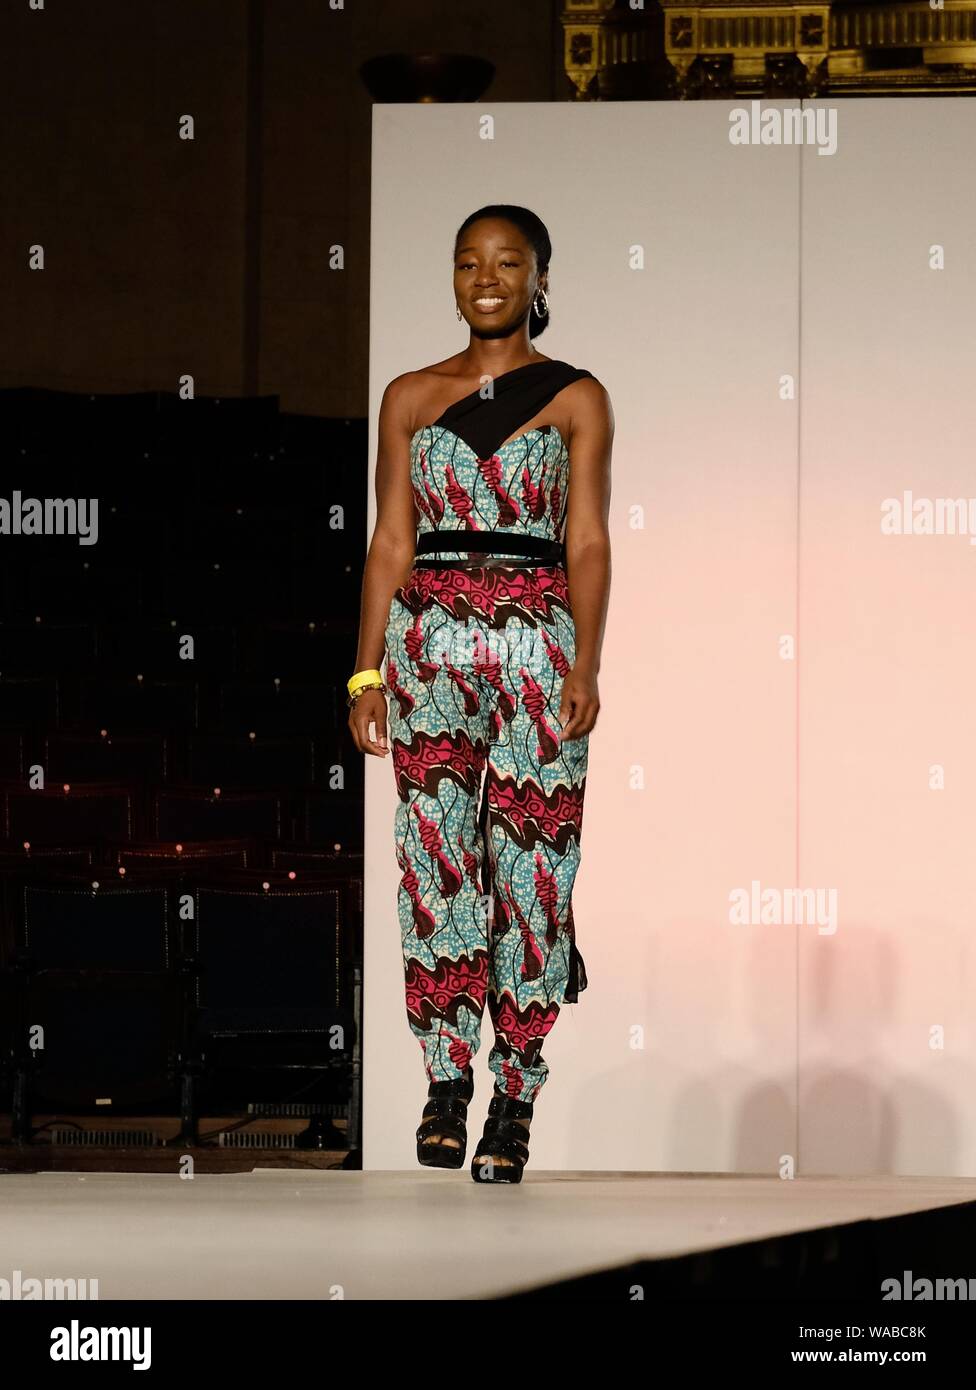 Die Designerin hinter dem Modelabel Sherah schließt ihre Show auf der Africa Fashion Week London 2019, die in der Freimaurer-Halle in London stattfindet. Stockfoto